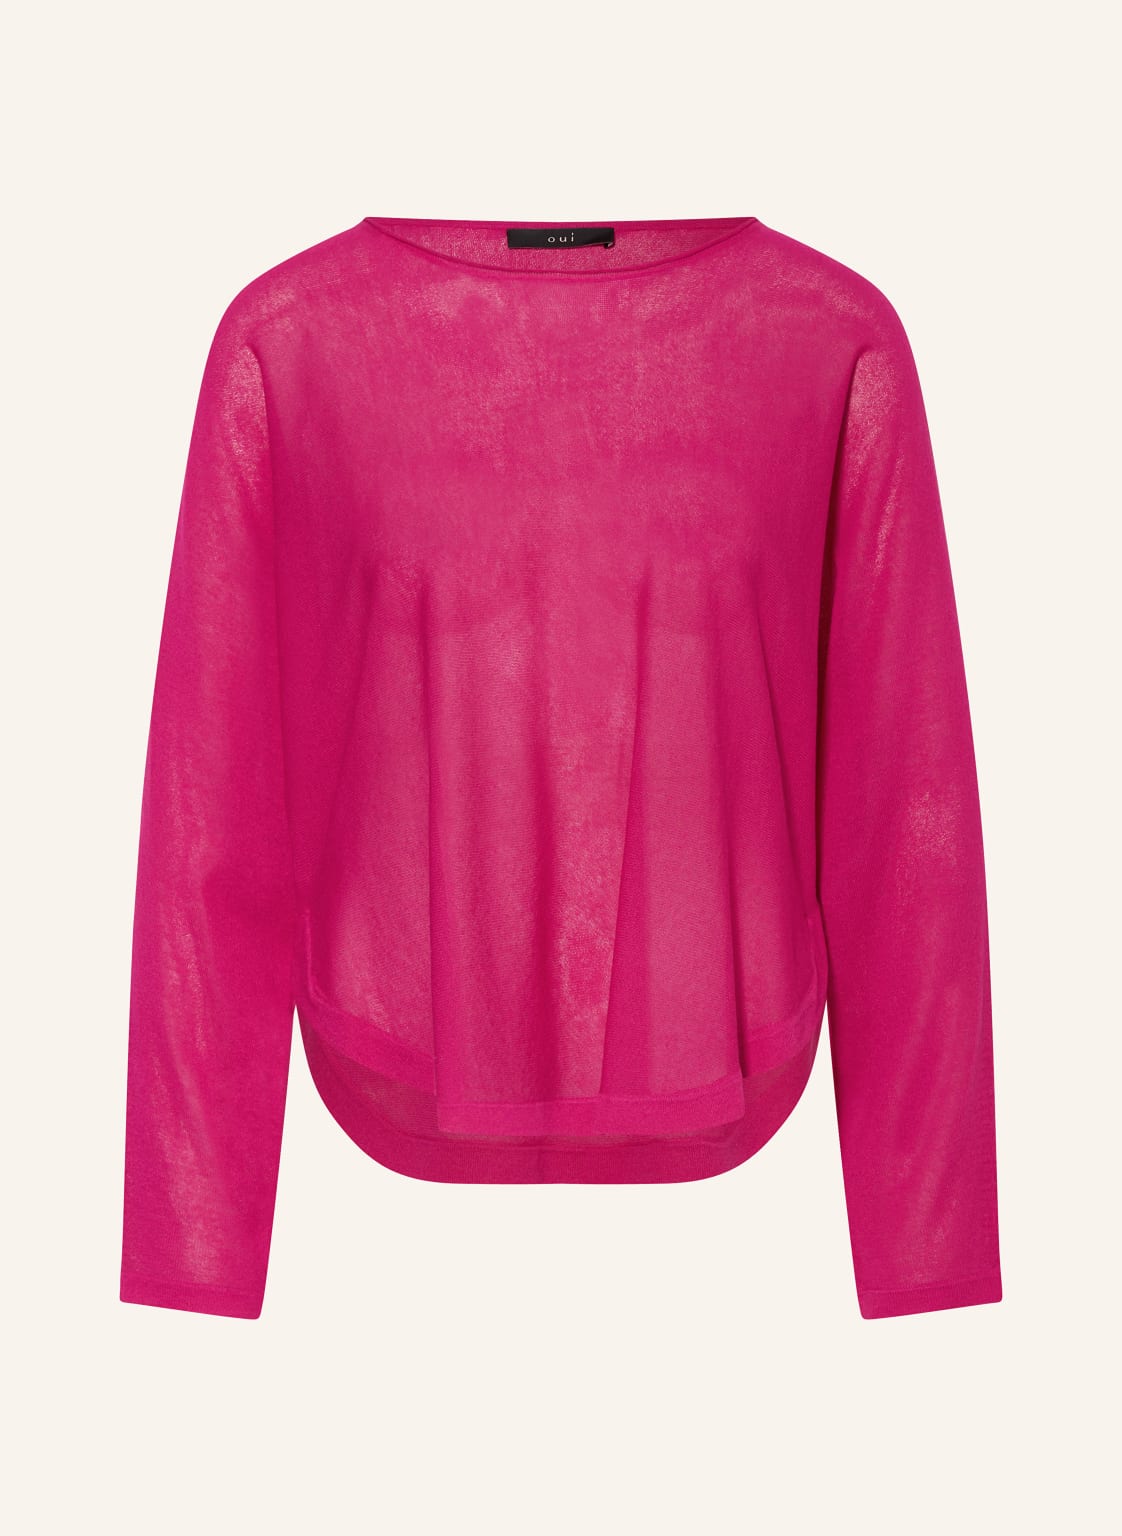 Oui Pullover pink von Oui